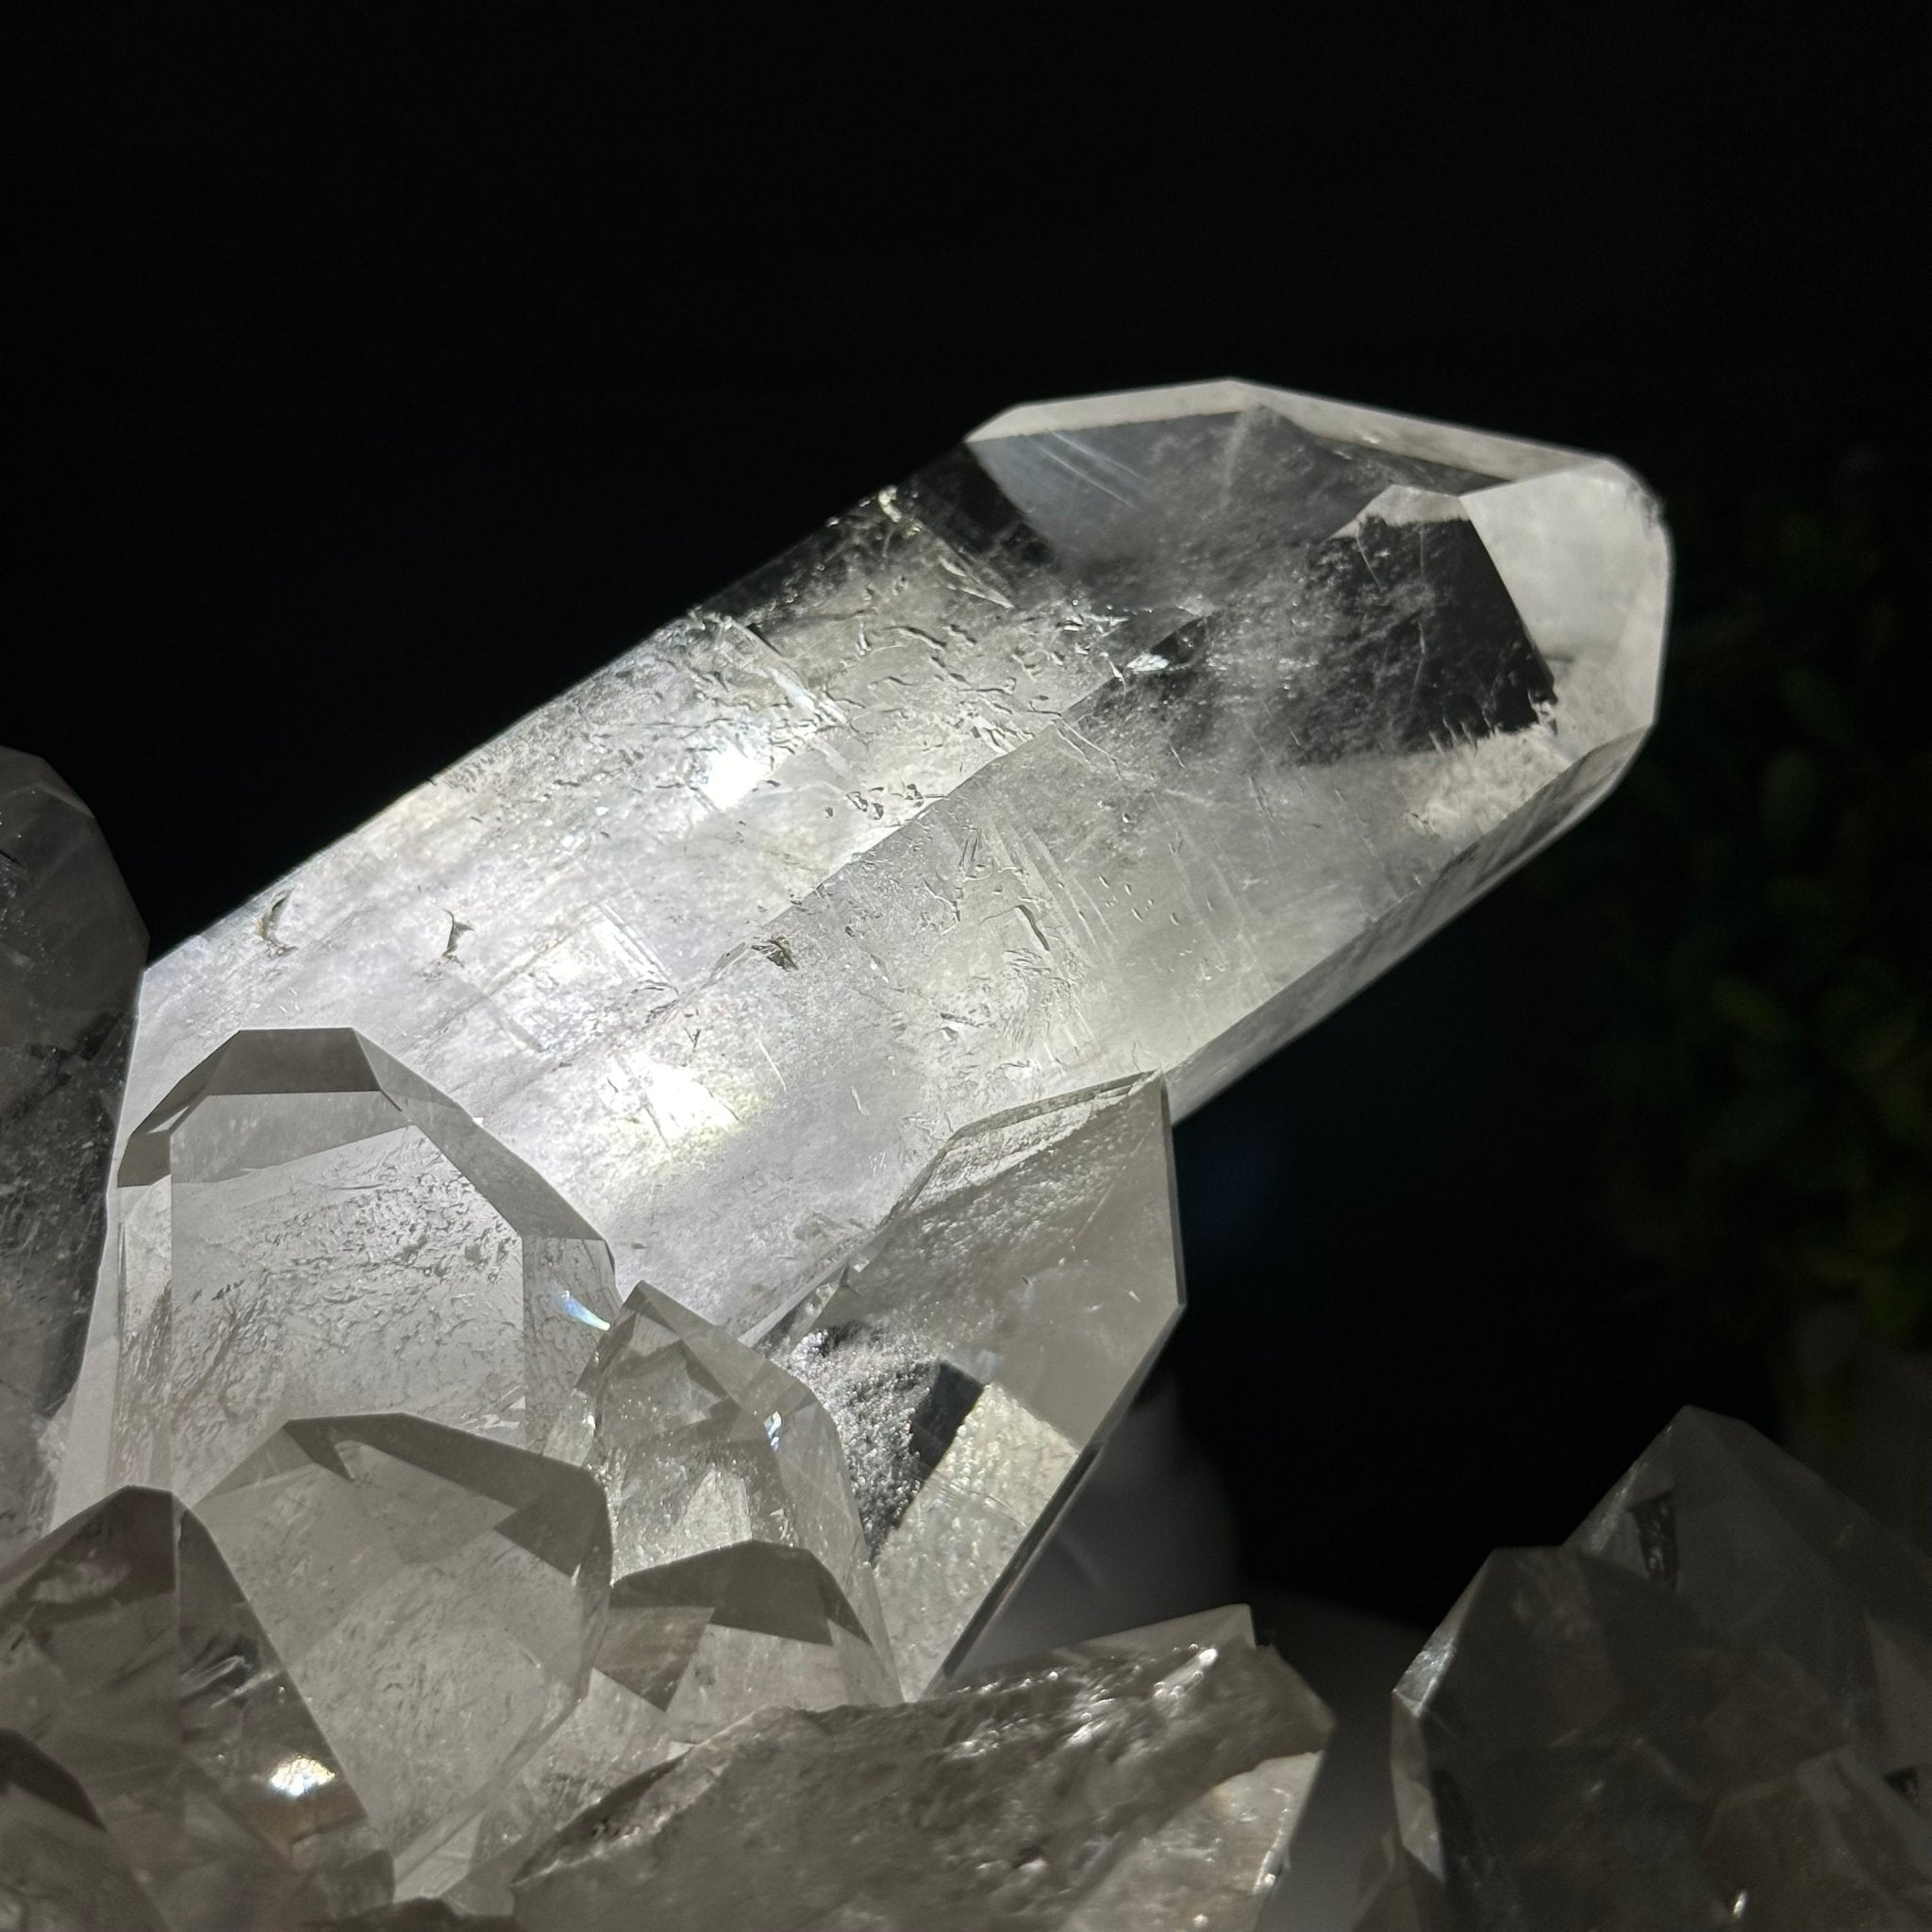 Super Quality Clear Quartz Crystal Cluster 20.5 lbs & 8.3" Tall Model #5494-0010 by Brazil Gems® - Brazil GemsBrazil GemsSuper Quality Clear Quartz Crystal Cluster 20.5 lbs & 8.3" Tall Model #5494-0010 by Brazil Gems®Clusters With Natural Bases5494-0010